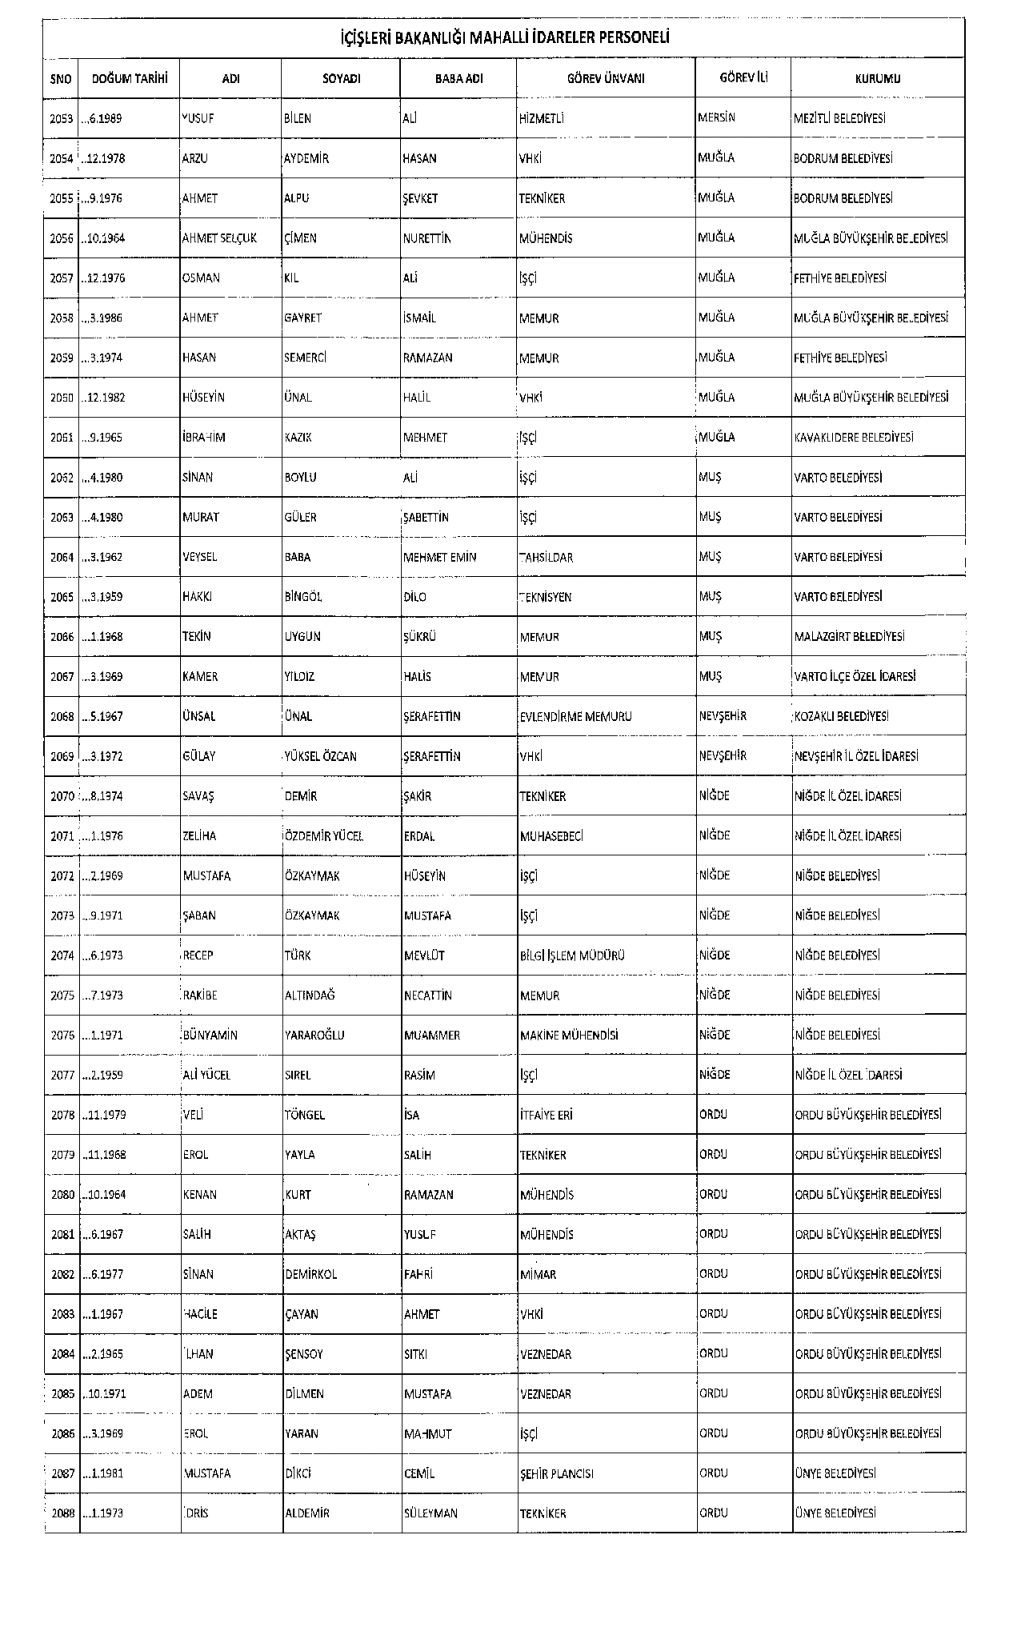 677 sayılı KHK İçişleri Bakanlığı ihraç isim listesi (TAM Liste)